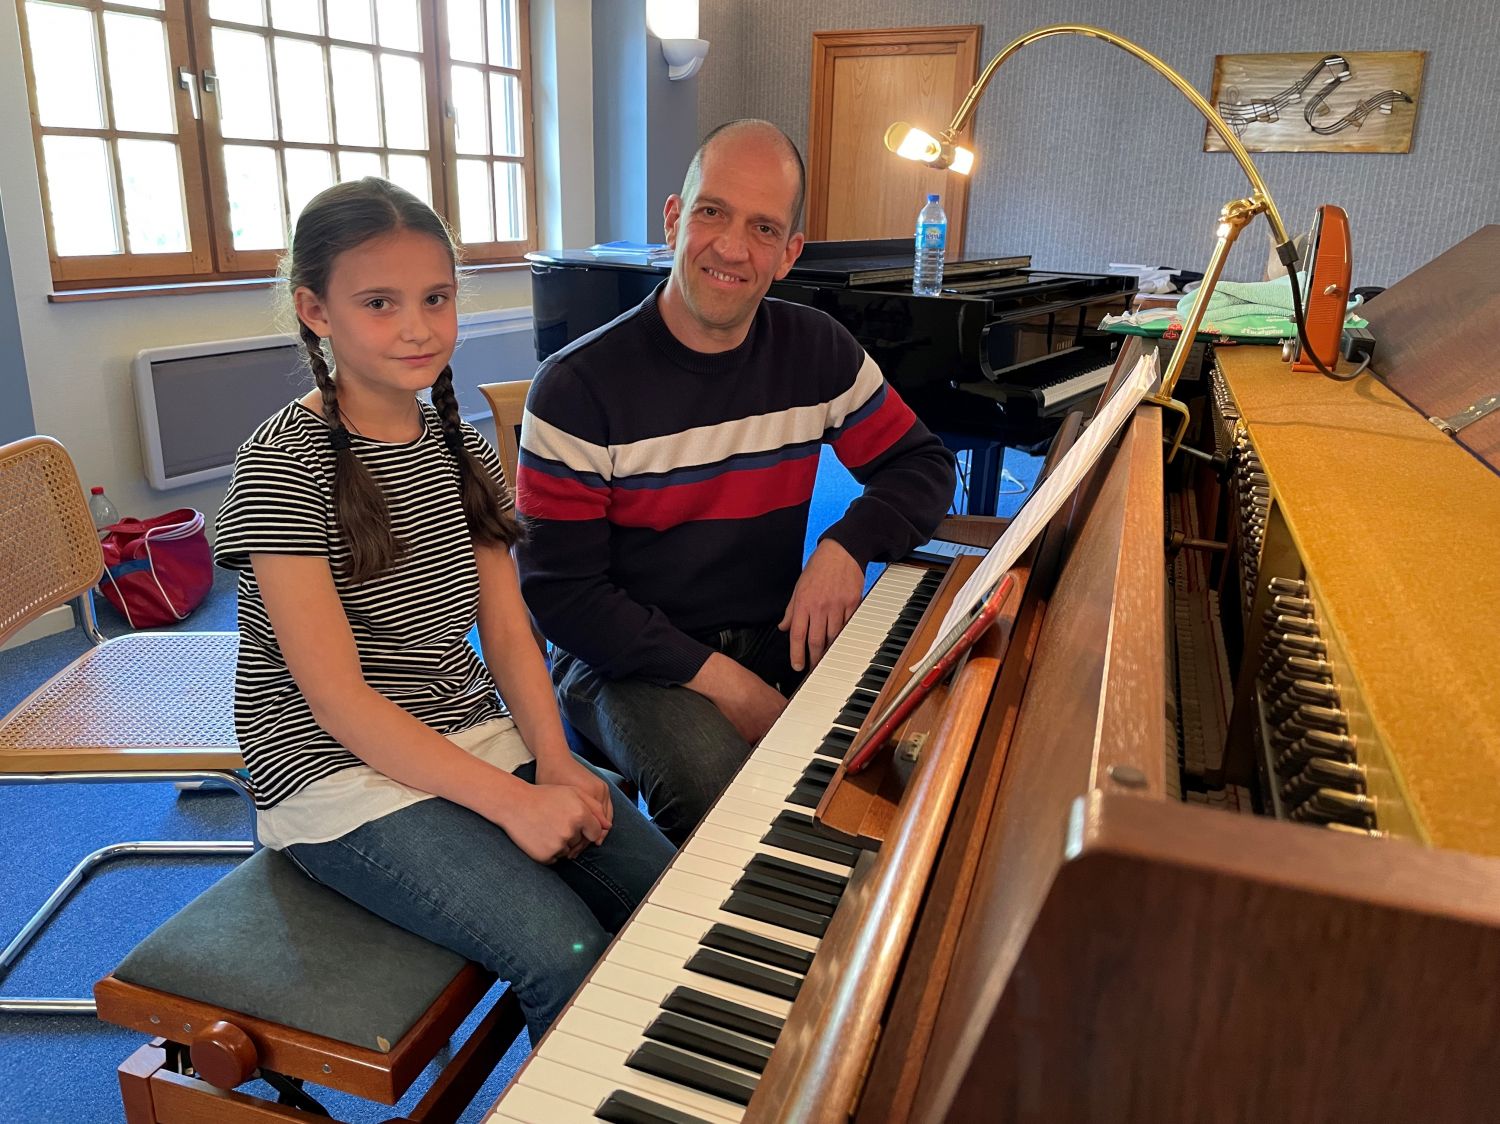 Sarralbe : après avoir fui la guerre en Ukraine, Vladislana n'a pas abandonné son rêve d'apprendre à jouer du piano